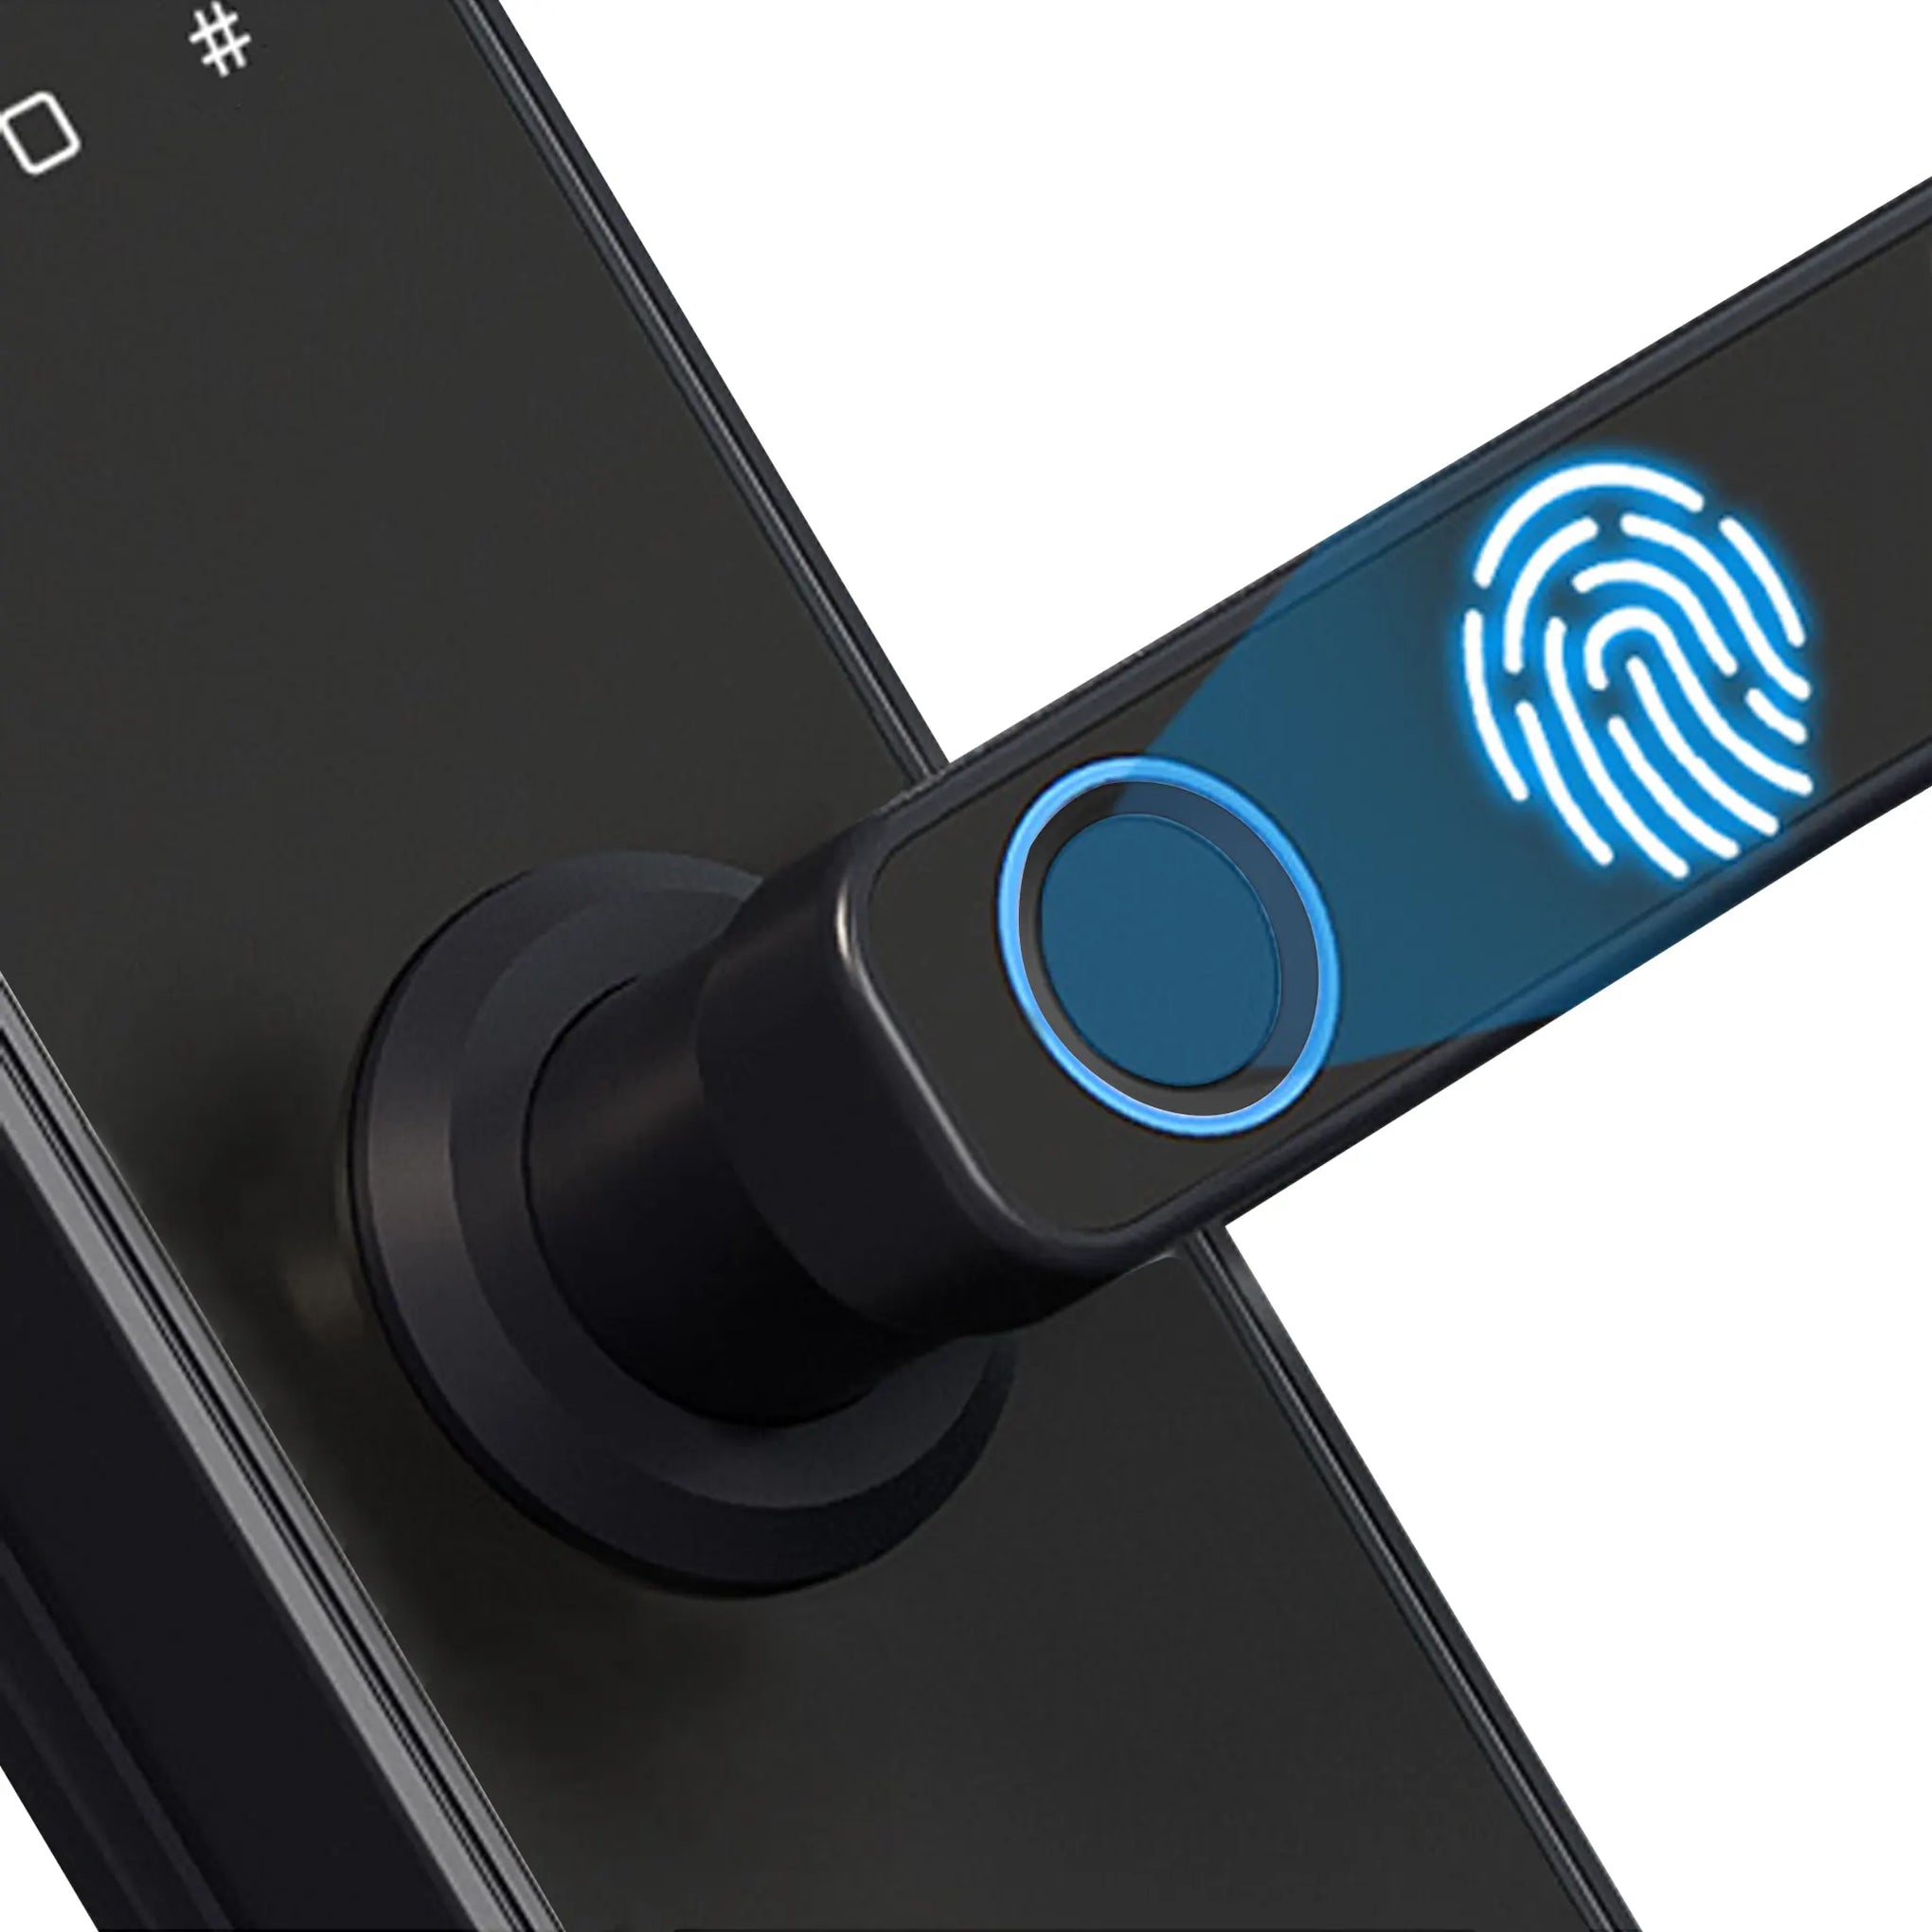 Fingerprink Smart Intelligent Door Lock with Camera 